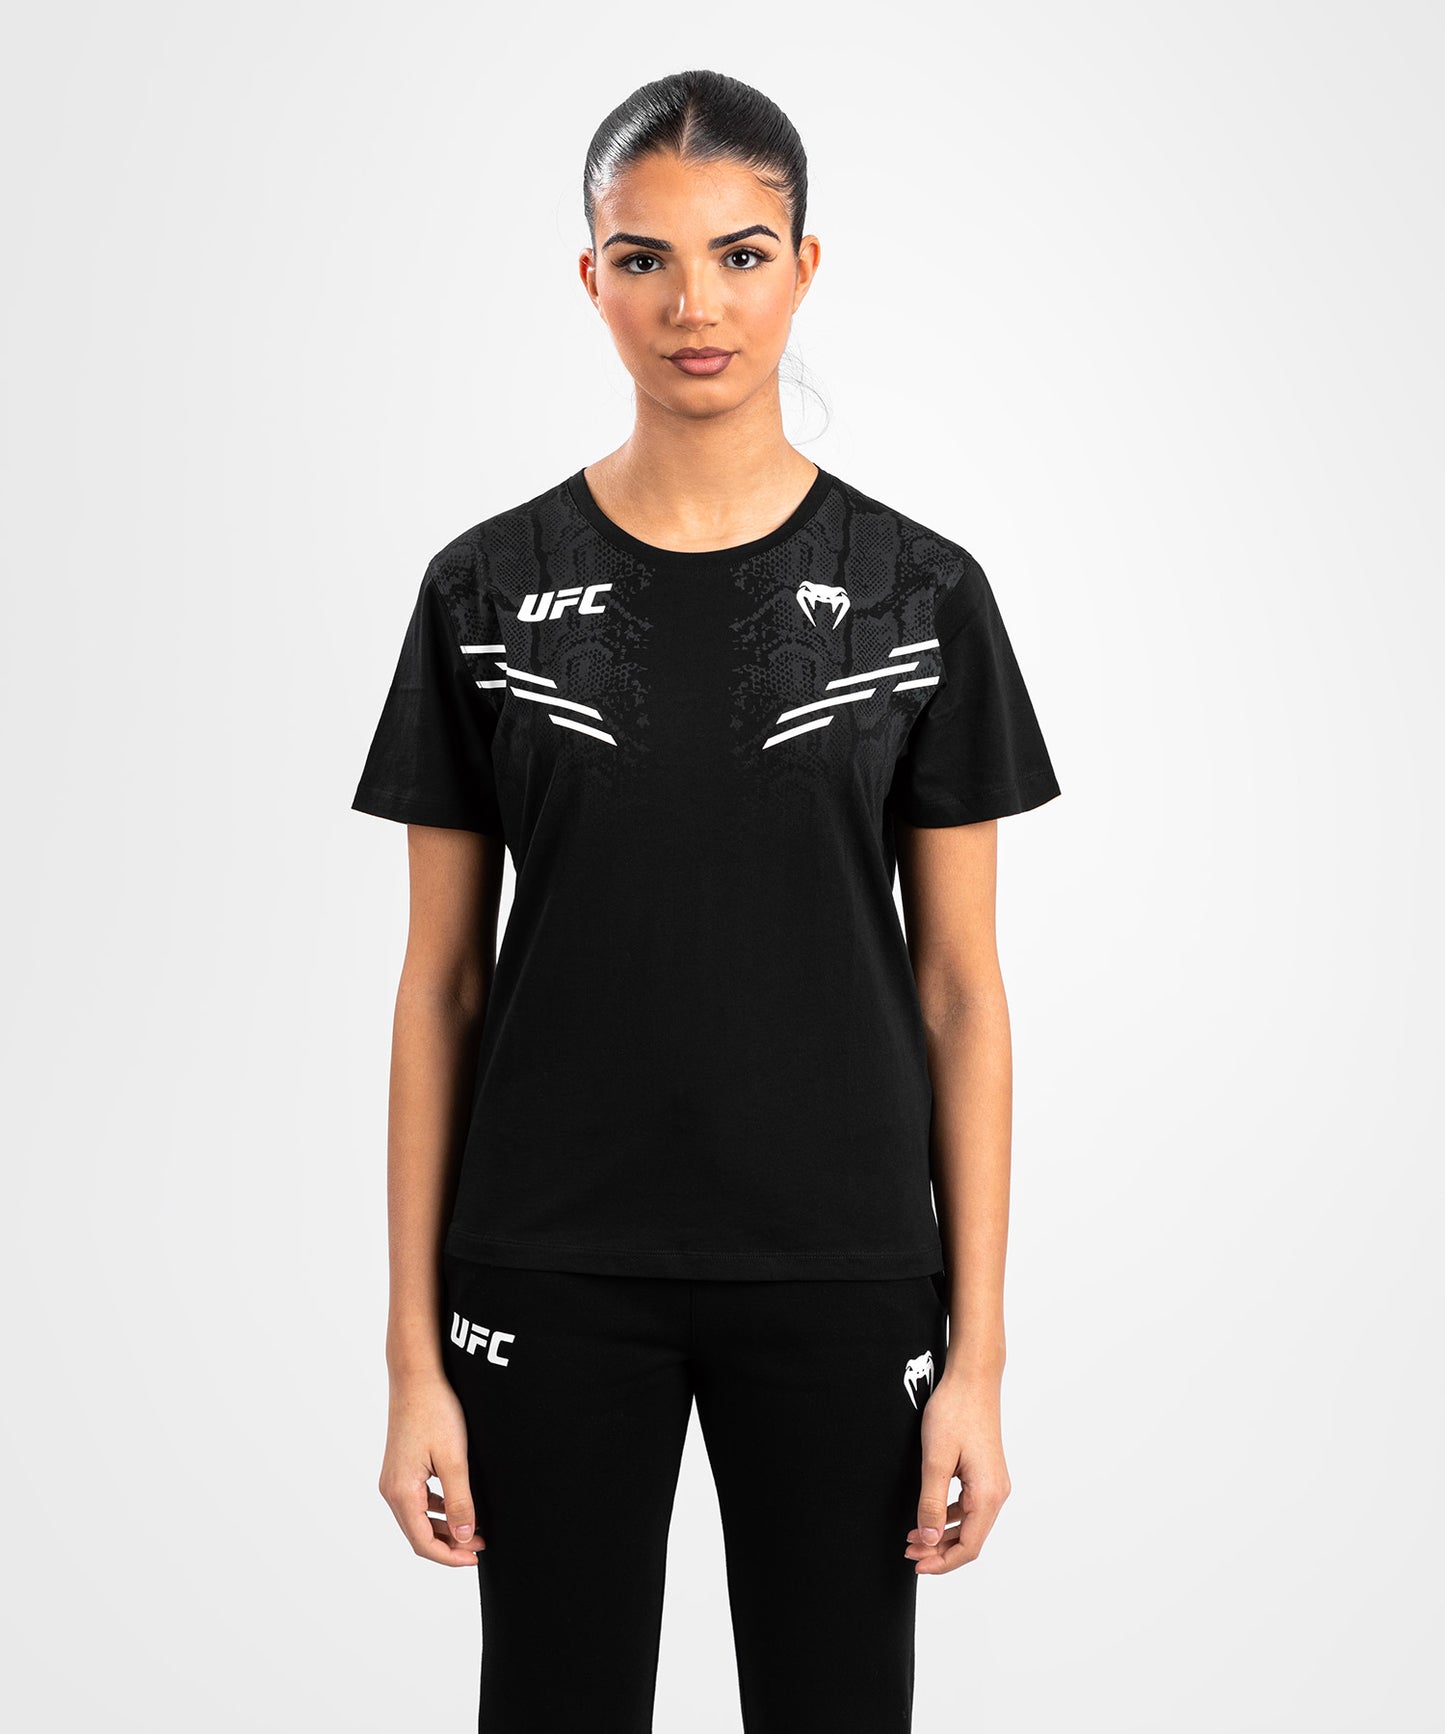 UFC Adrenaline by Venum Replica Women’s Short-sleeve T-shirt - Black